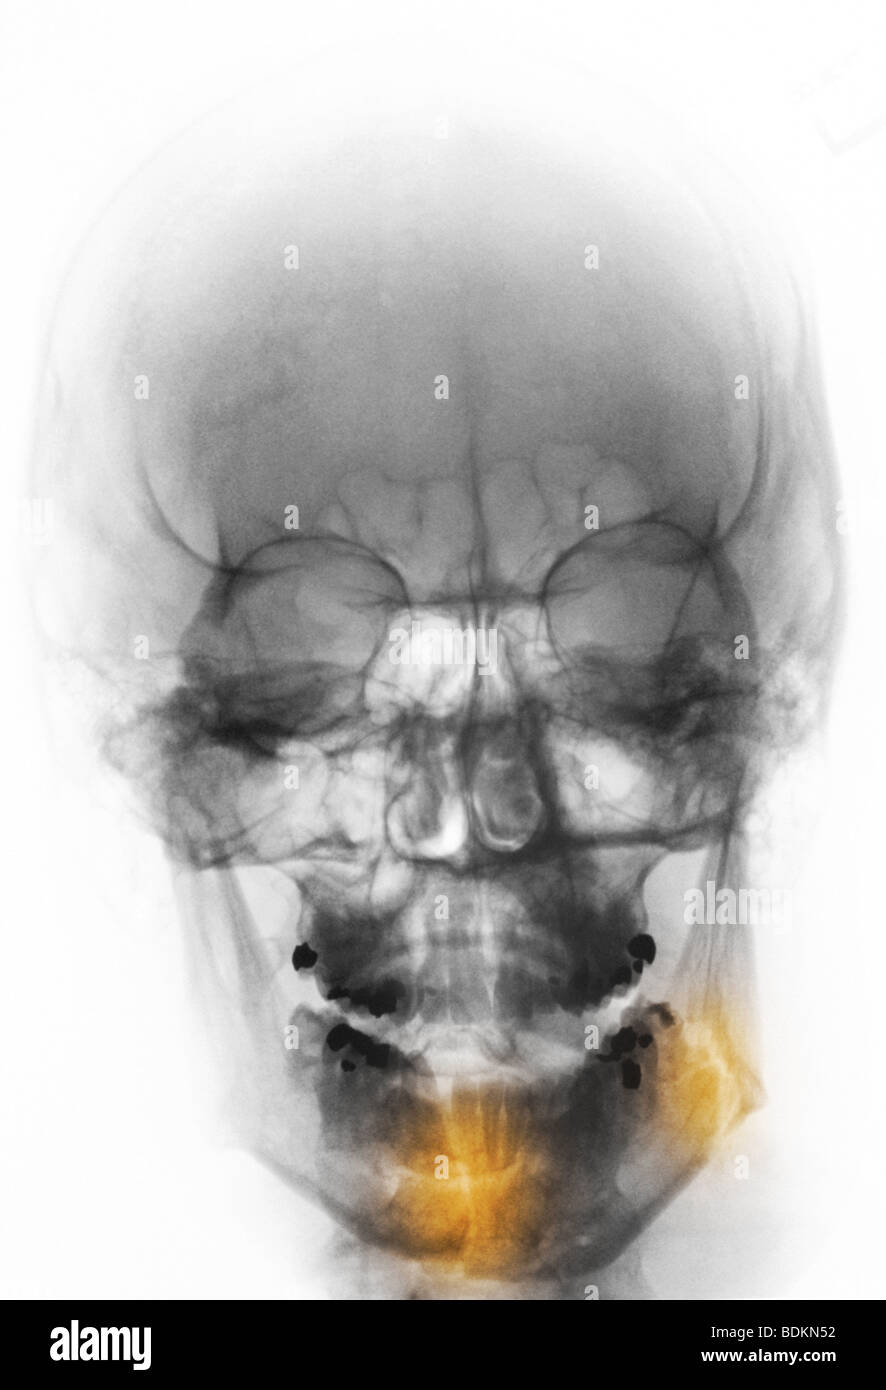 X-ray du crâne d'un homme de 28 ans qui a été frappé au visage. Il y a deux fractures de la mâchoire inférieure (mandibule) Banque D'Images